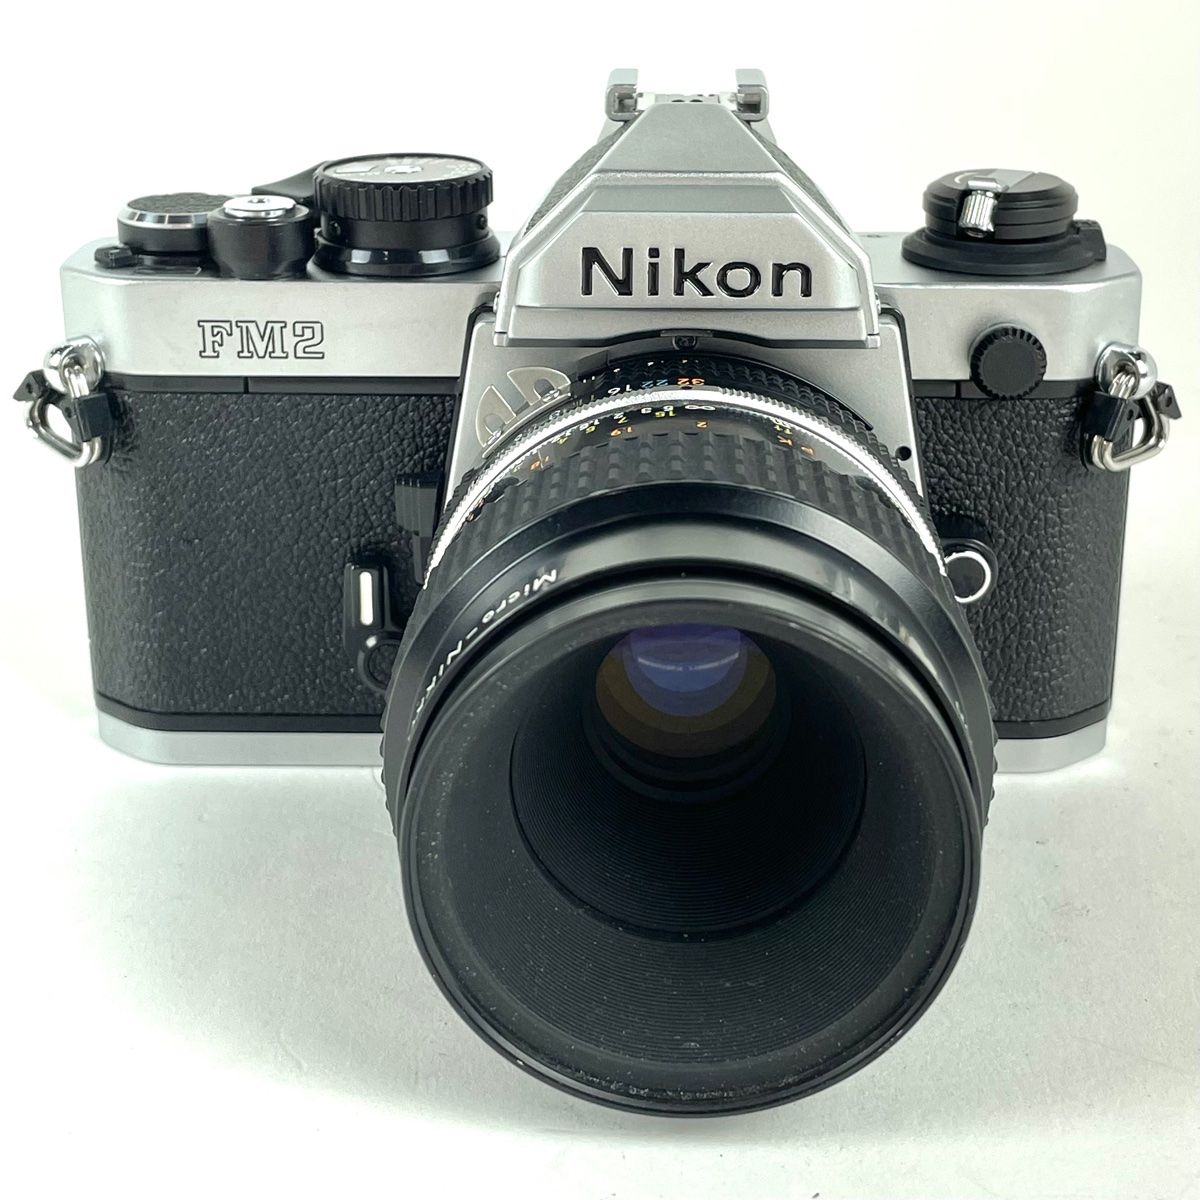 ニコン Nikon NEW FM2 シルバー + Ai-S MICRO NIKKOR 55mm F2.8 マクロ